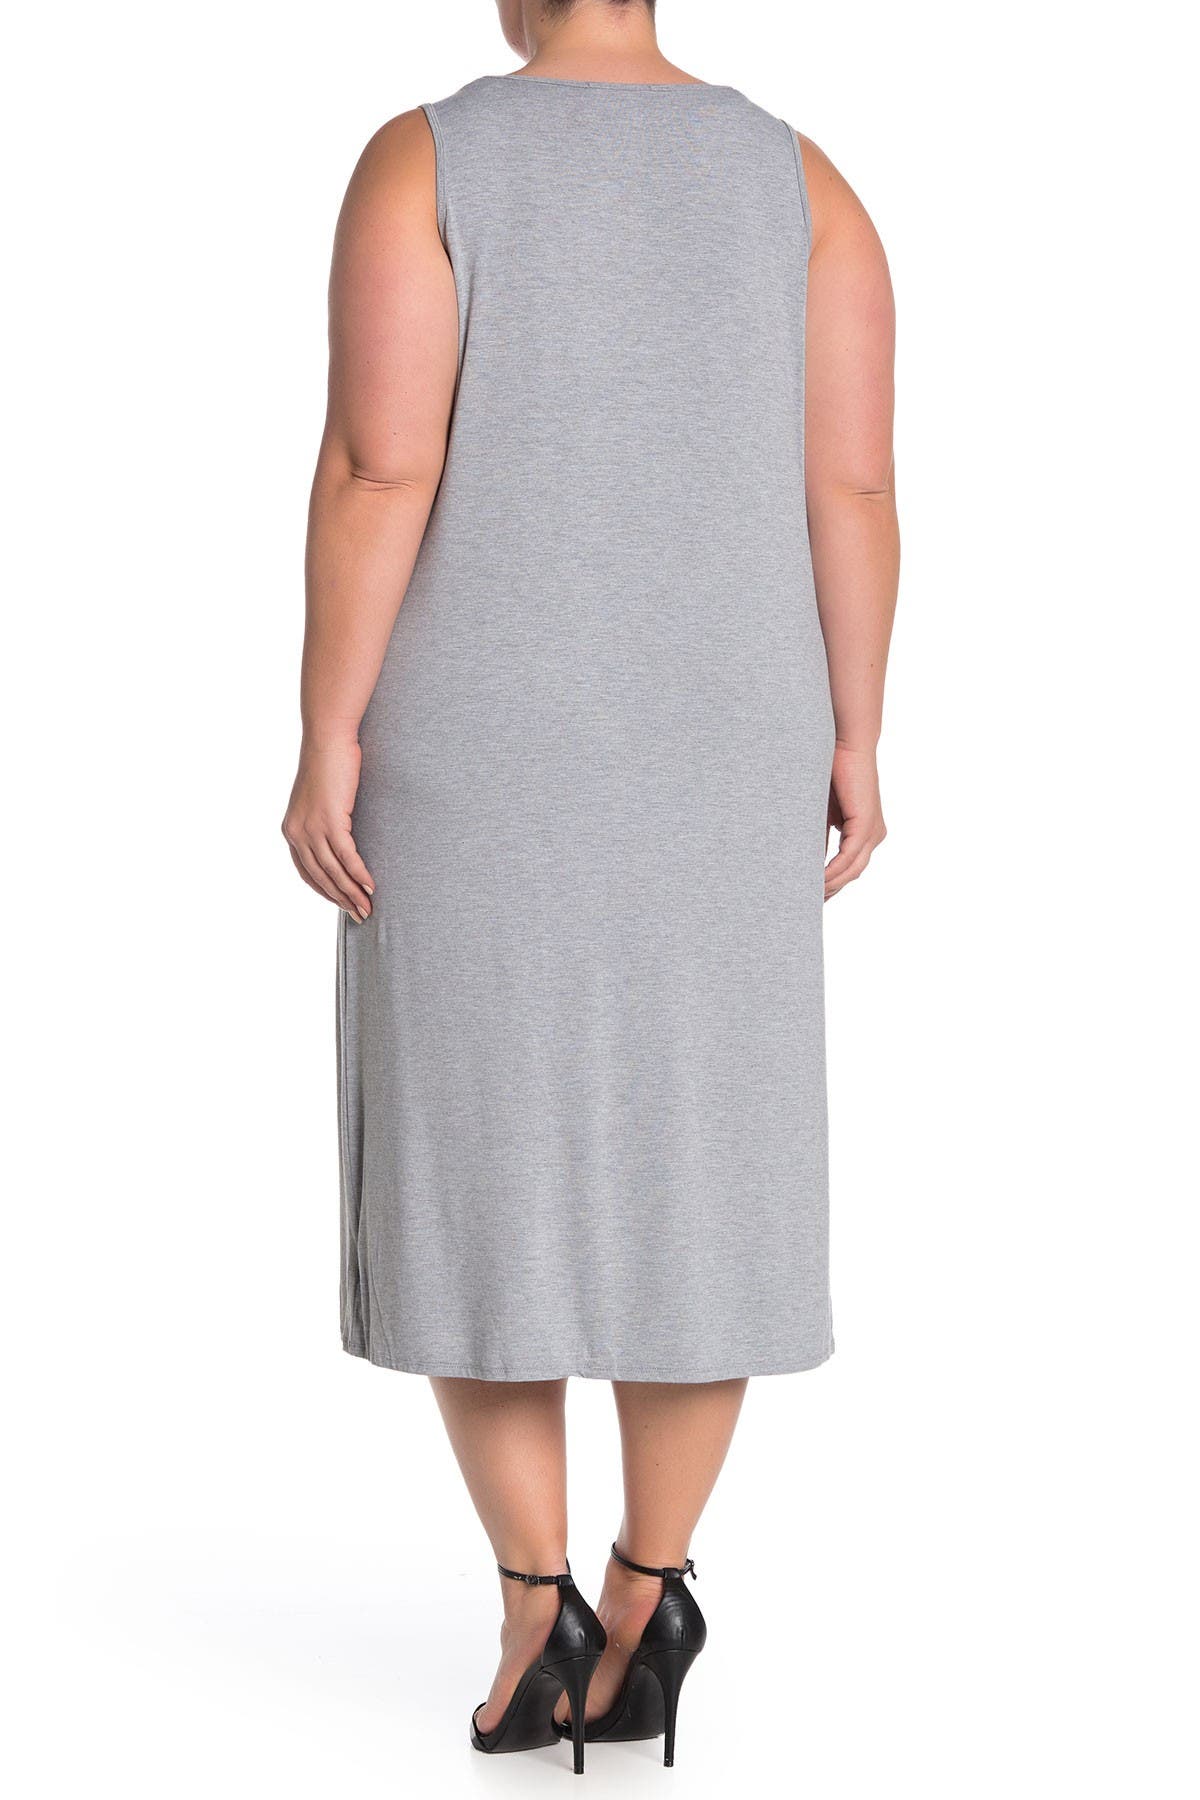 Philosophy Apparel Scoop Neck Midi Knit Tank Dress In Open Grey17